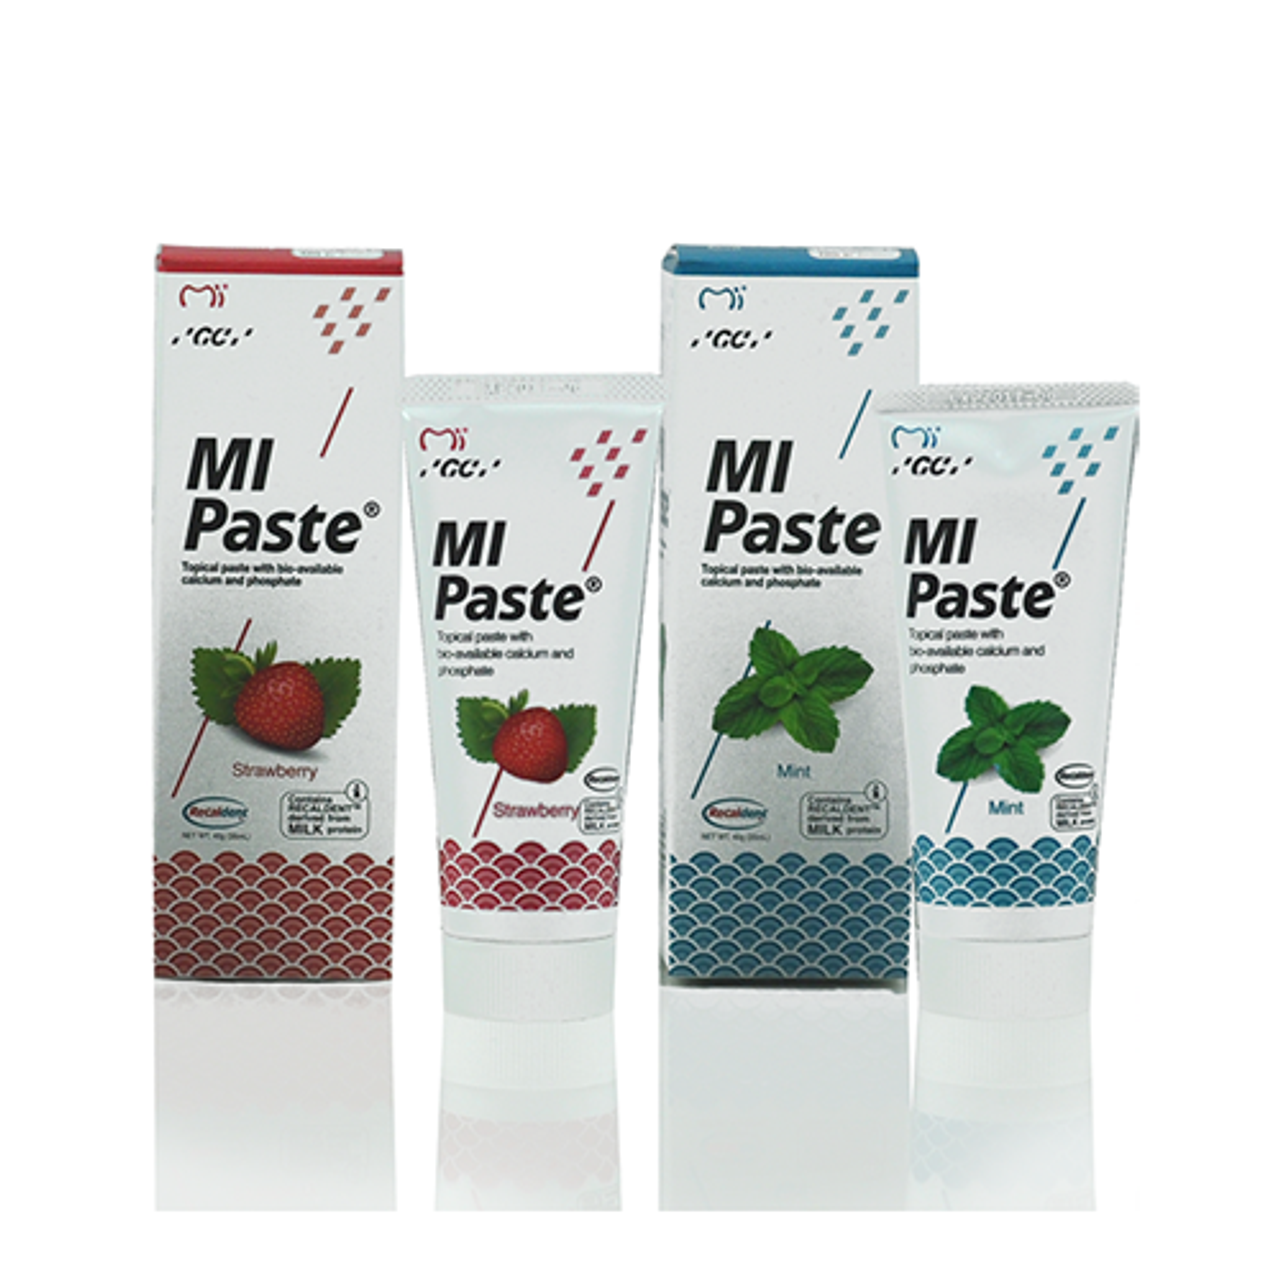 MI Paste Plus Assortment Pack 10/Pk. Contains RECALDENT (CPP-ACP)